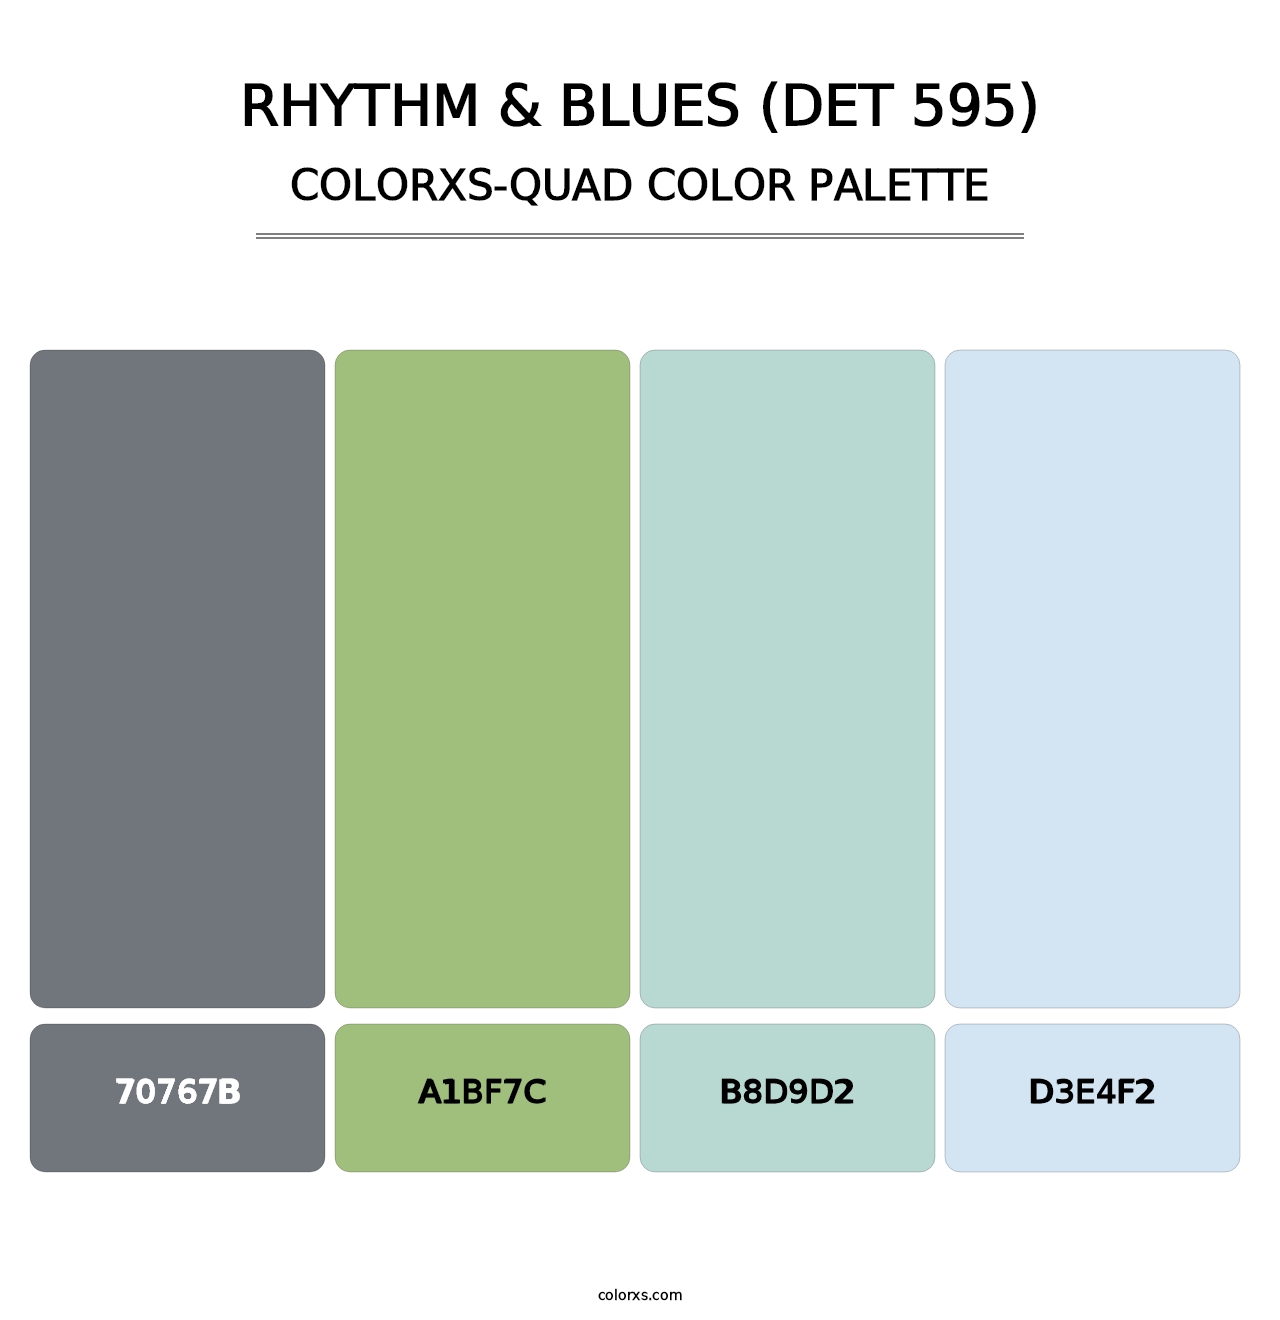 Rhythm & Blues (DET 595) - Colorxs Quad Palette